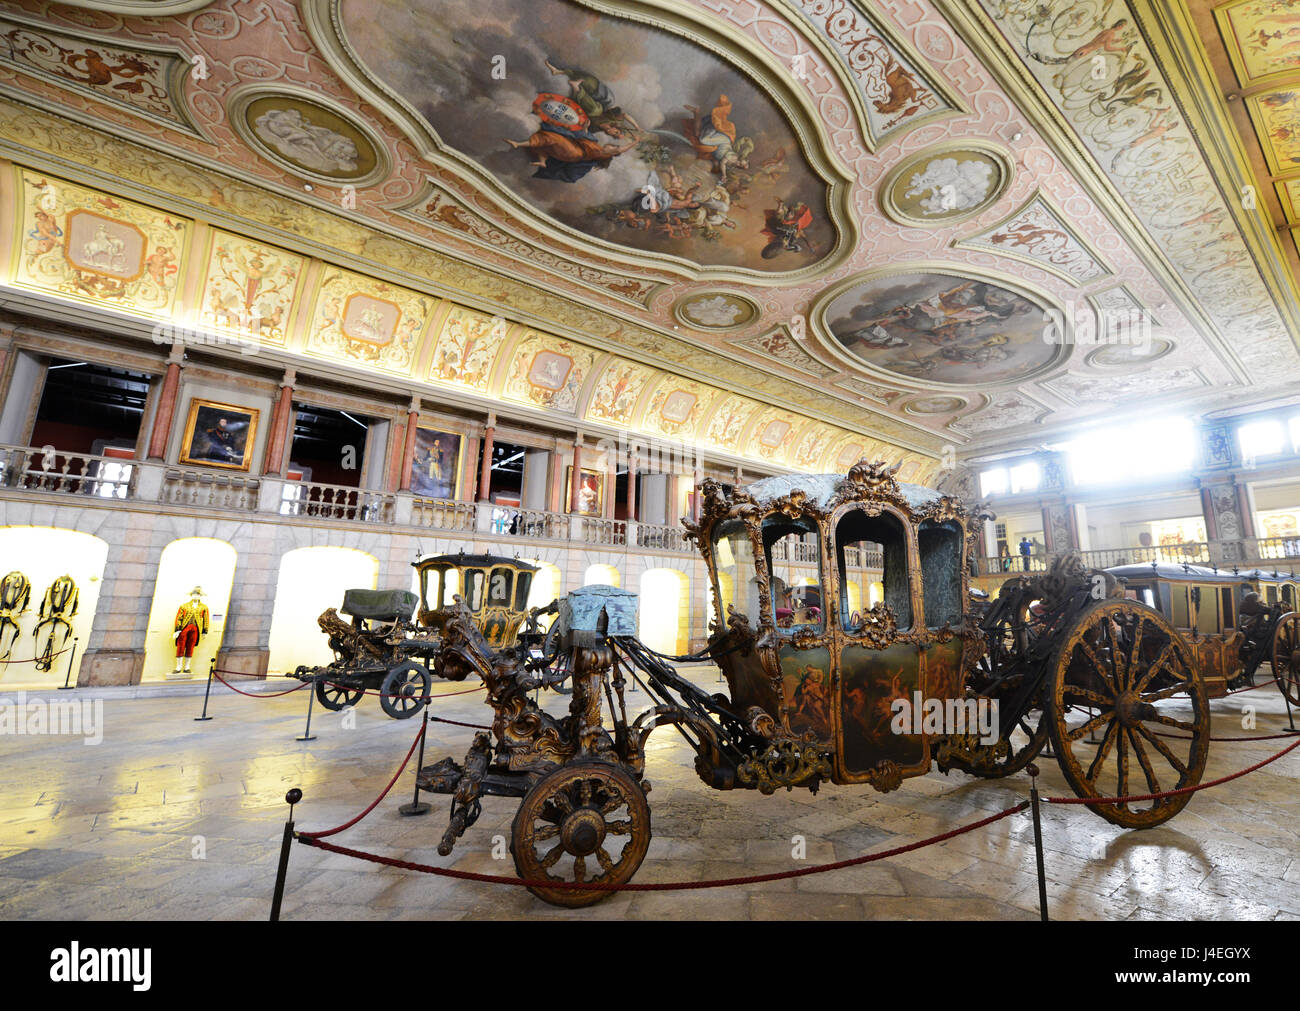 L'entraîneur National Museum est l'une des plus belles collections de voitures historiques dans le monde, étant l'un des musées les plus visités dans la région de Lisbonne. Banque D'Images